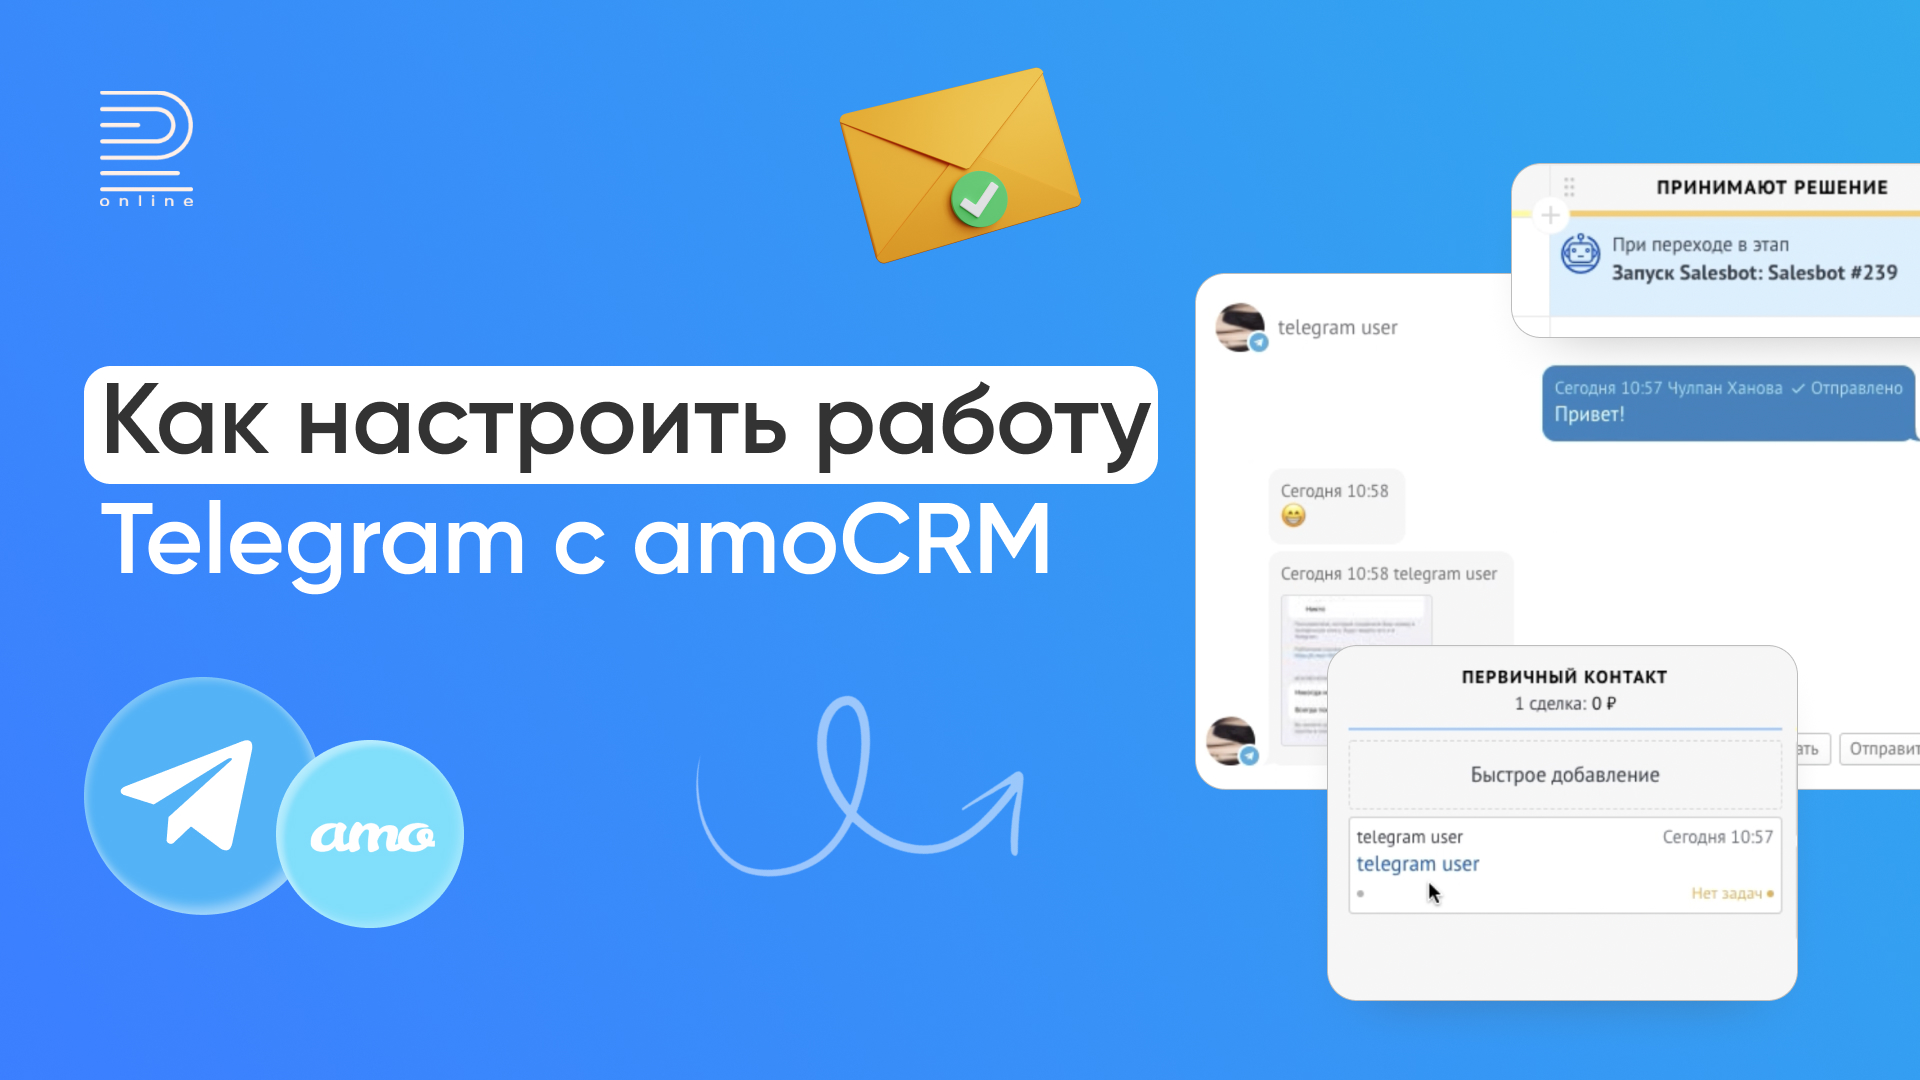 Как настроить работу Telegram с amoCRM: инструкция по работе интеграции